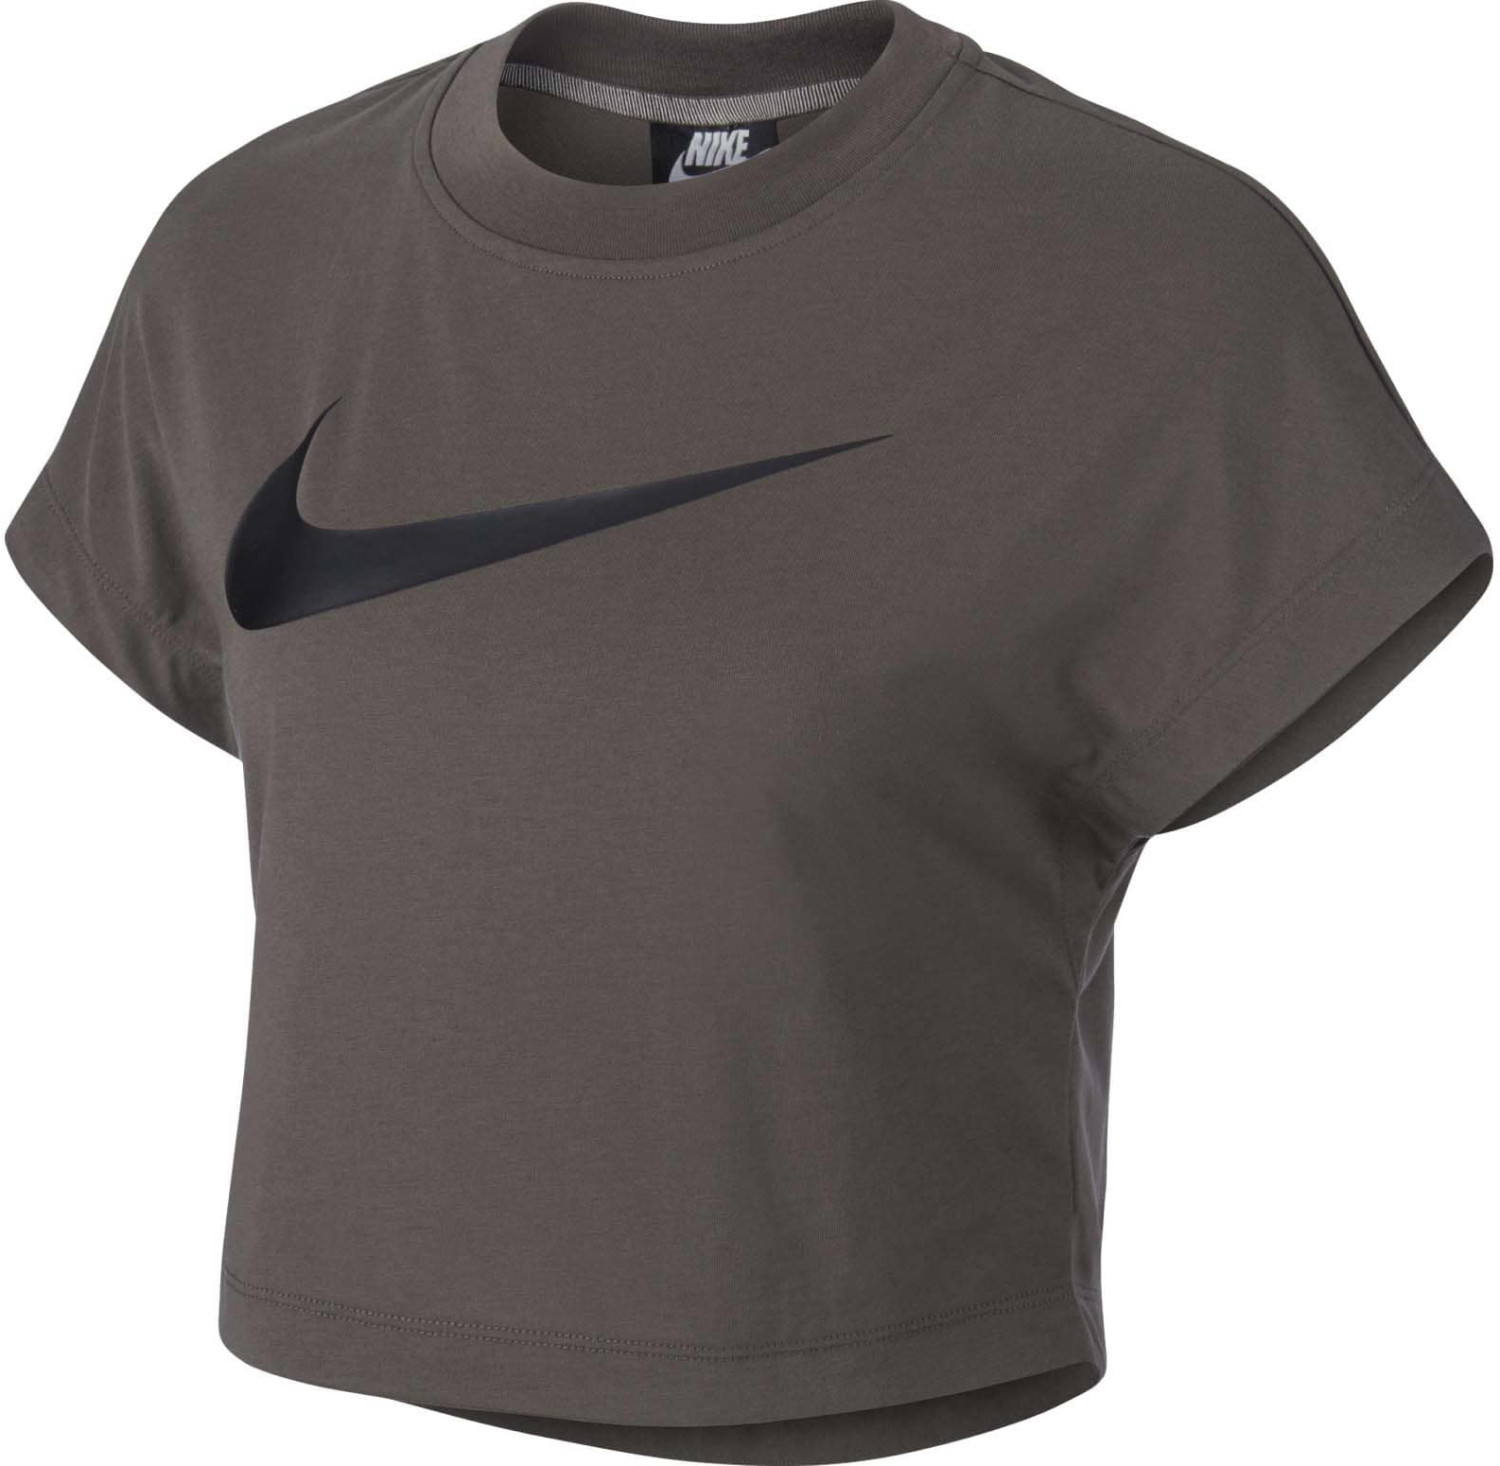 Nike Sportswear Crop Top ridgerock/black (AR3064)